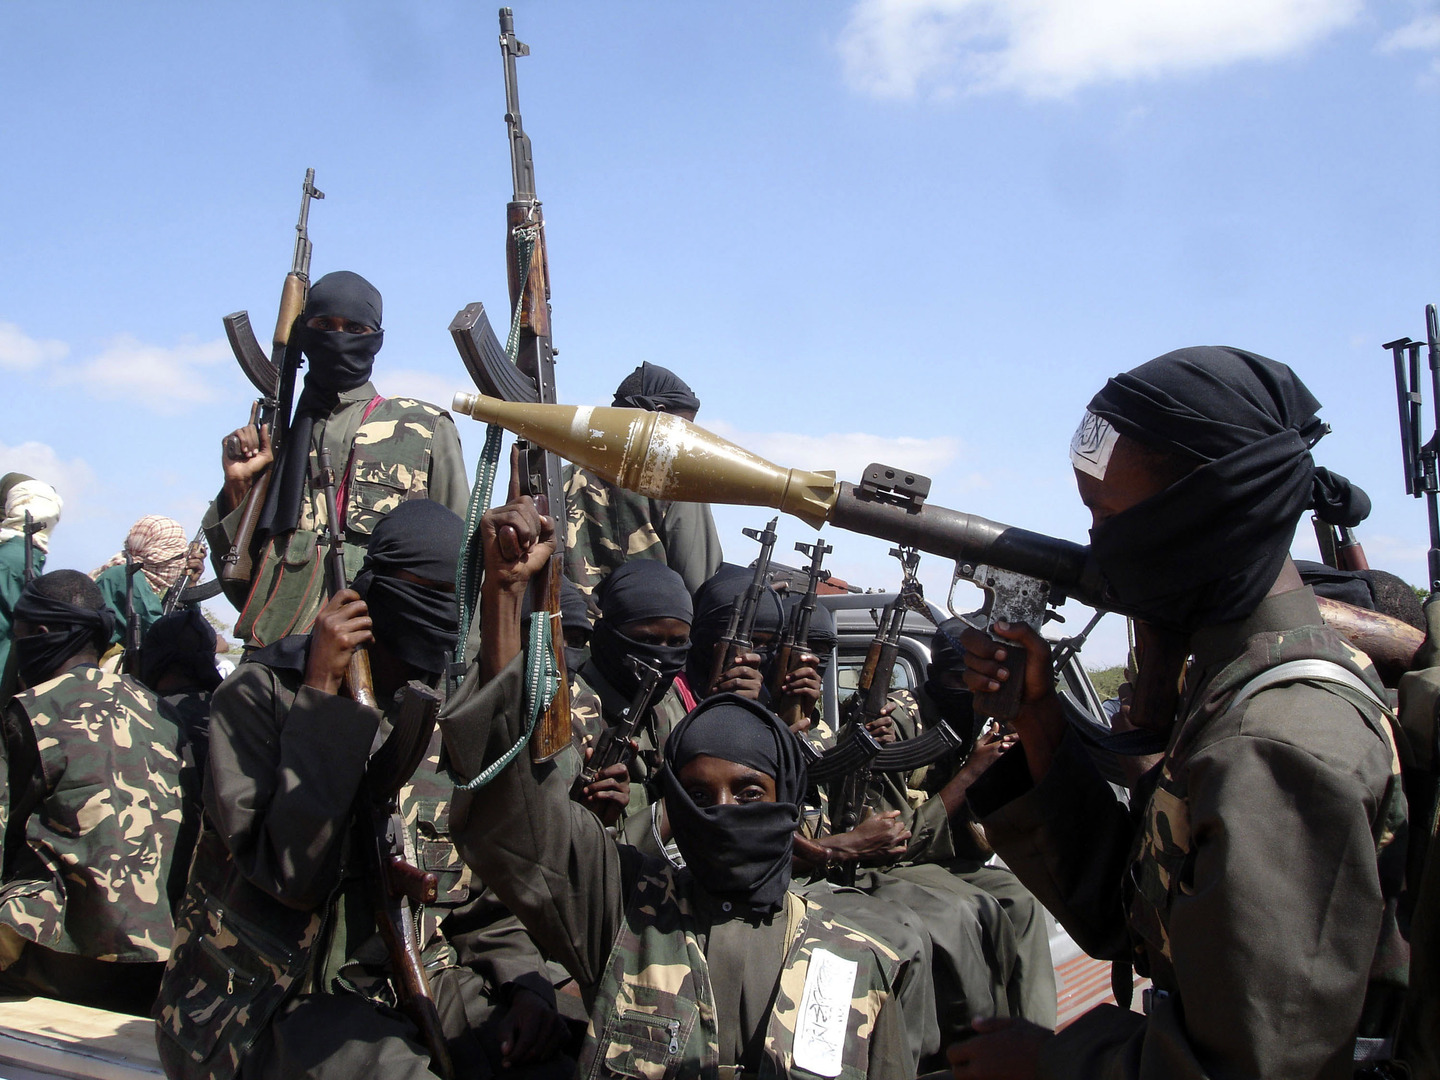 الصومال.. مقتل 30 عنصرا من حركة الشباب